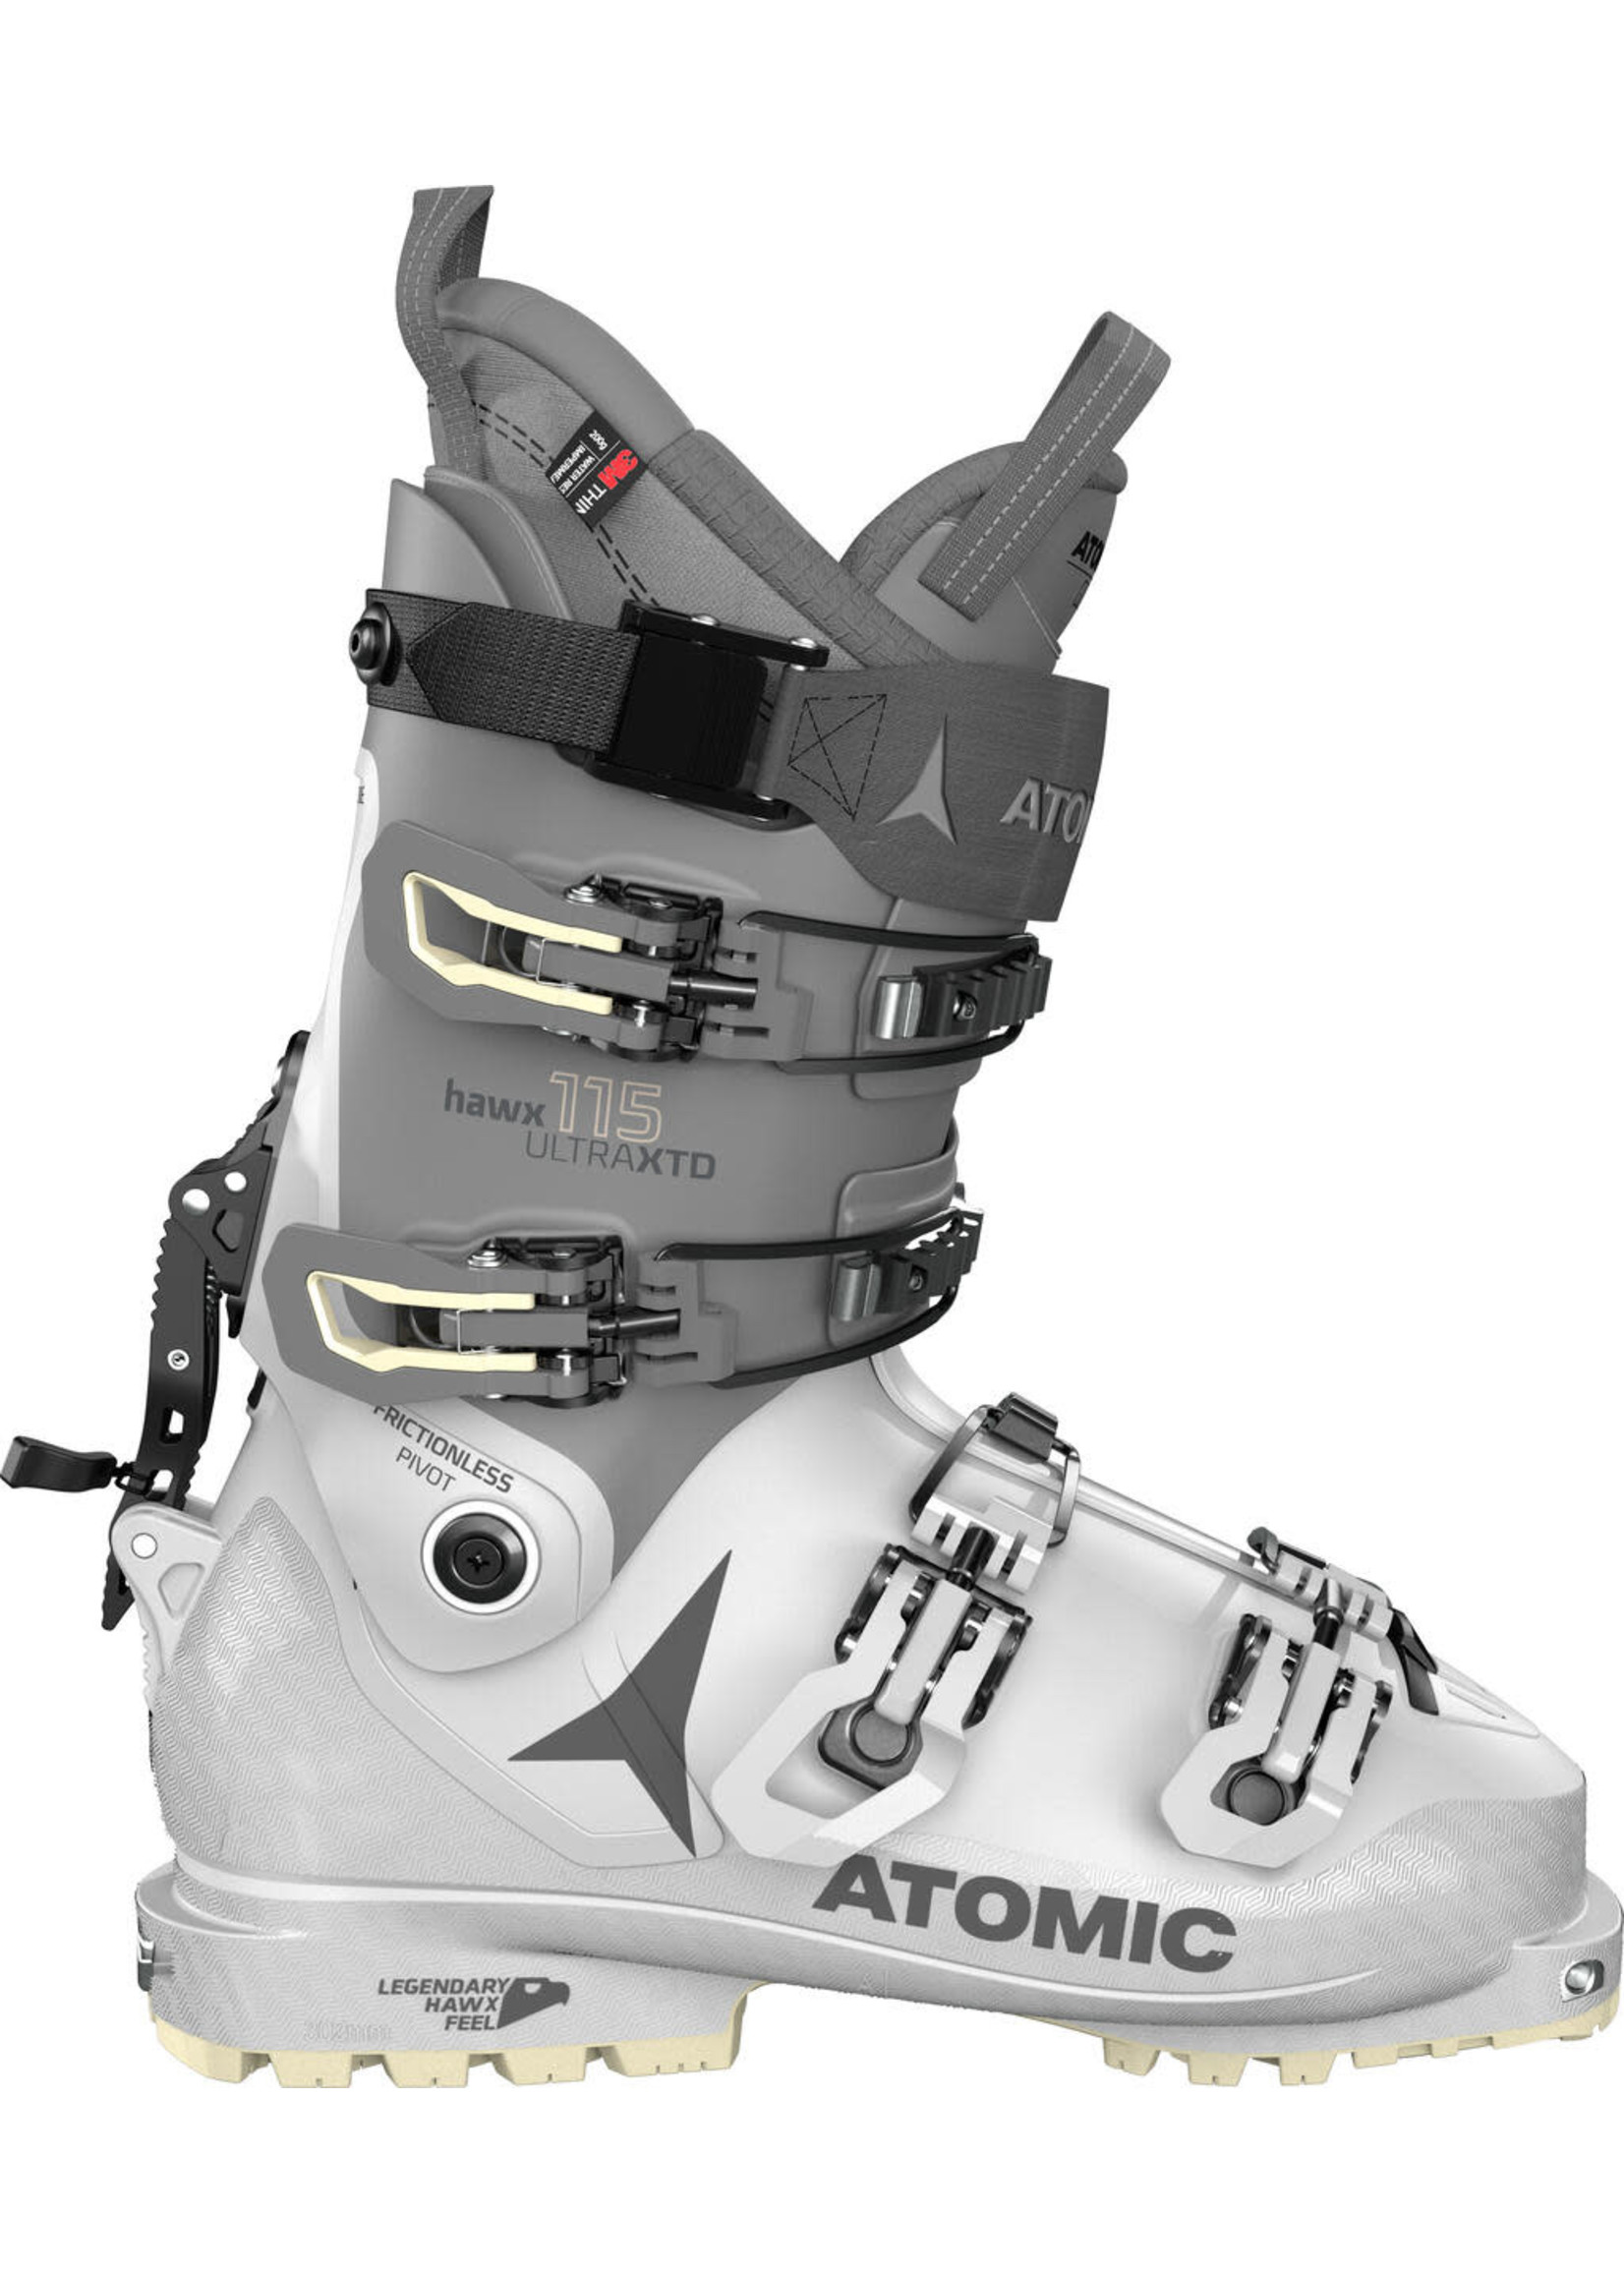 Atomic W. Ski Boot Touring Hawx Ultra XTD 115